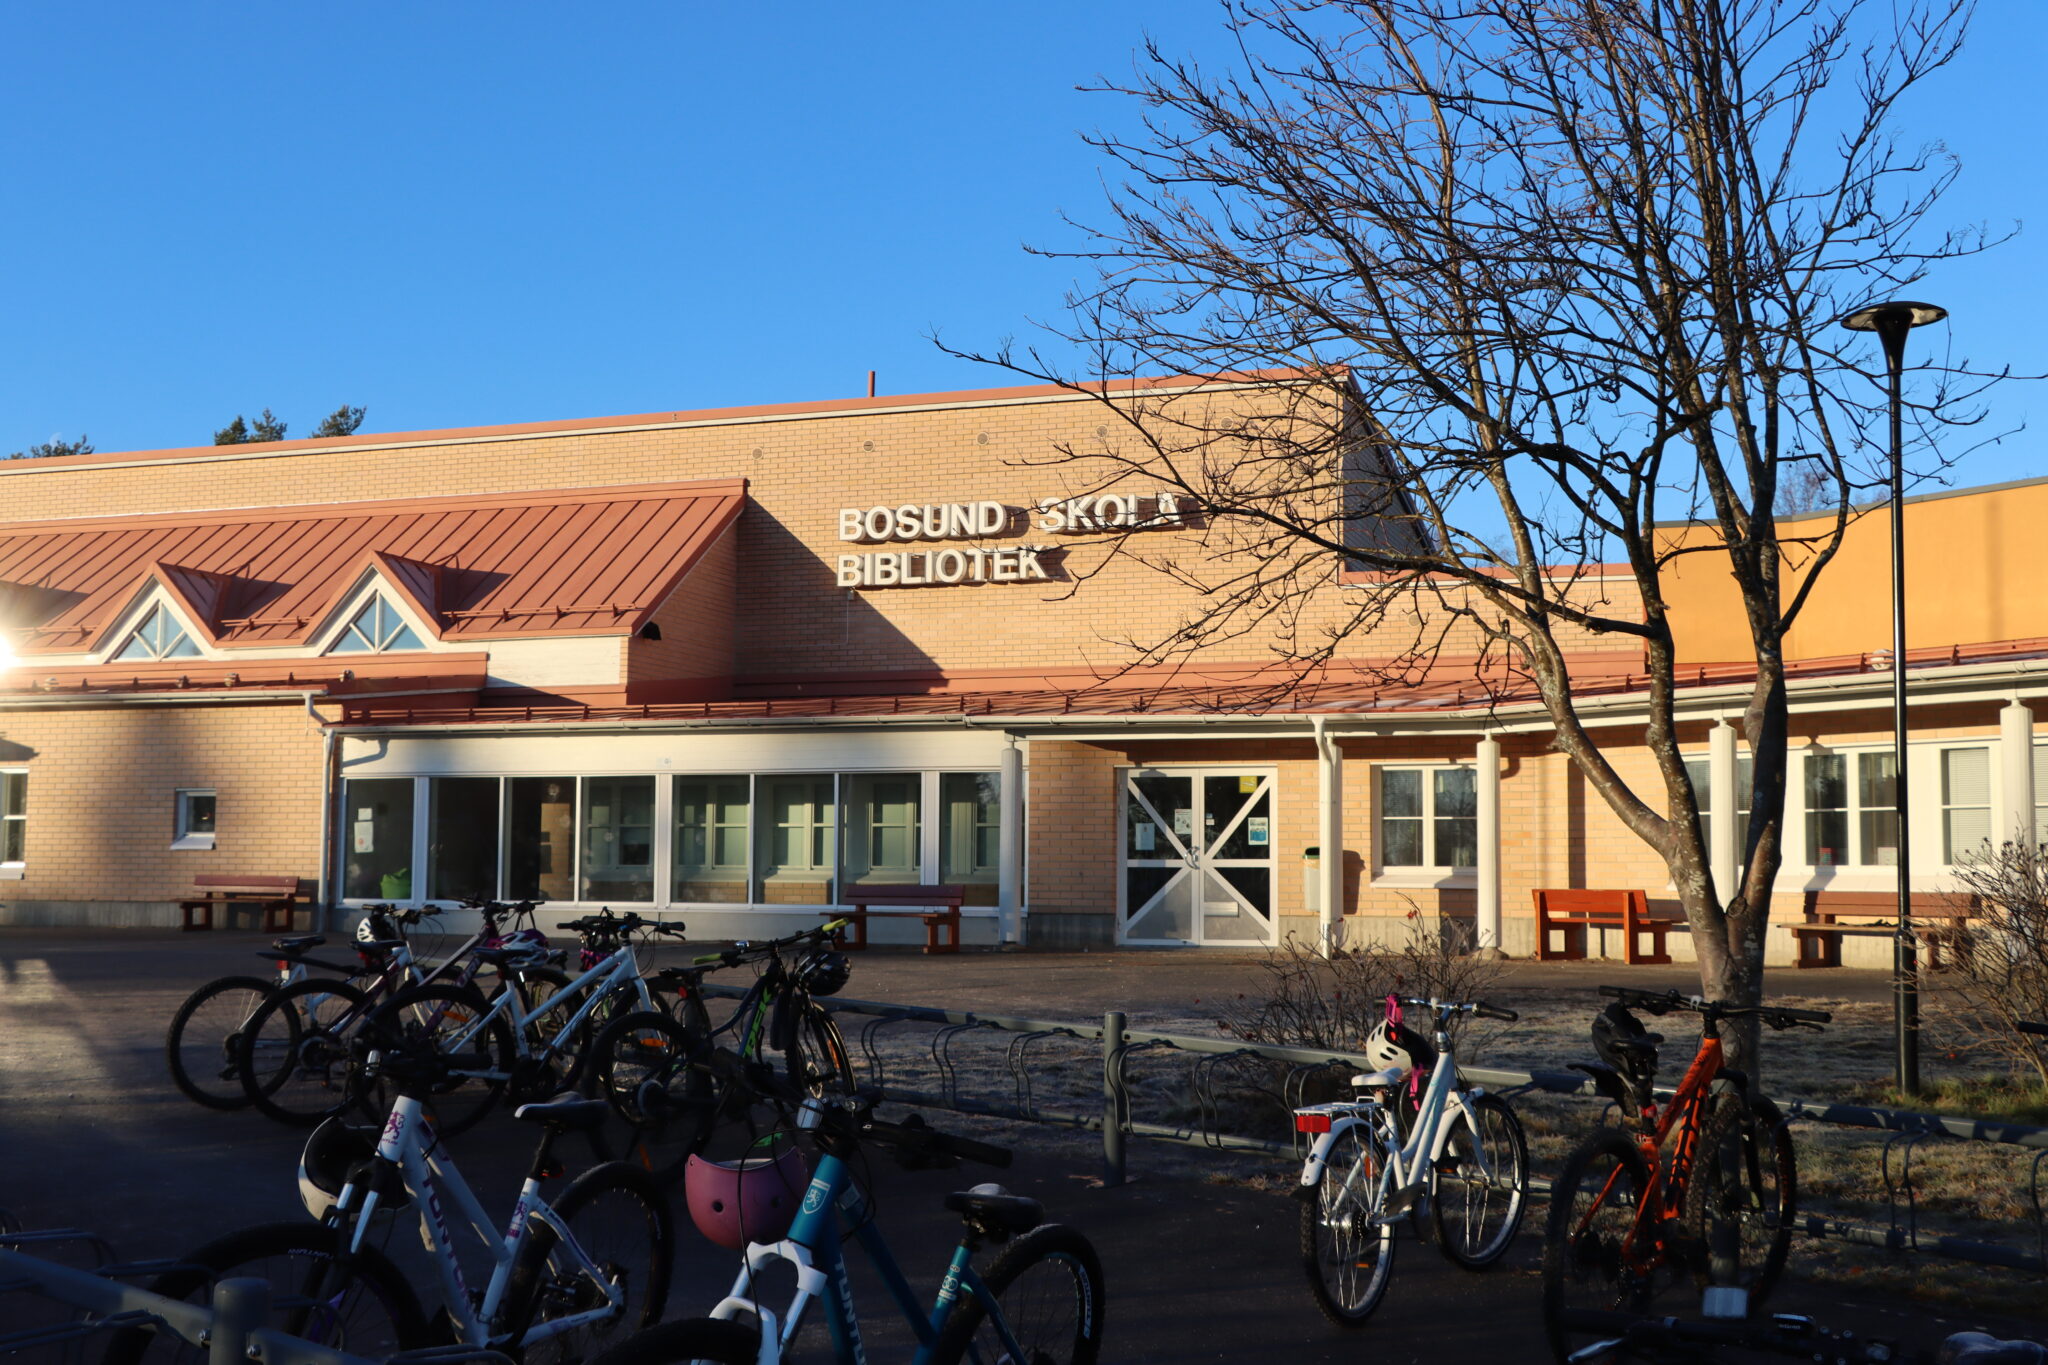 Bosund skola och bibliotek gårdsplan med cyklar